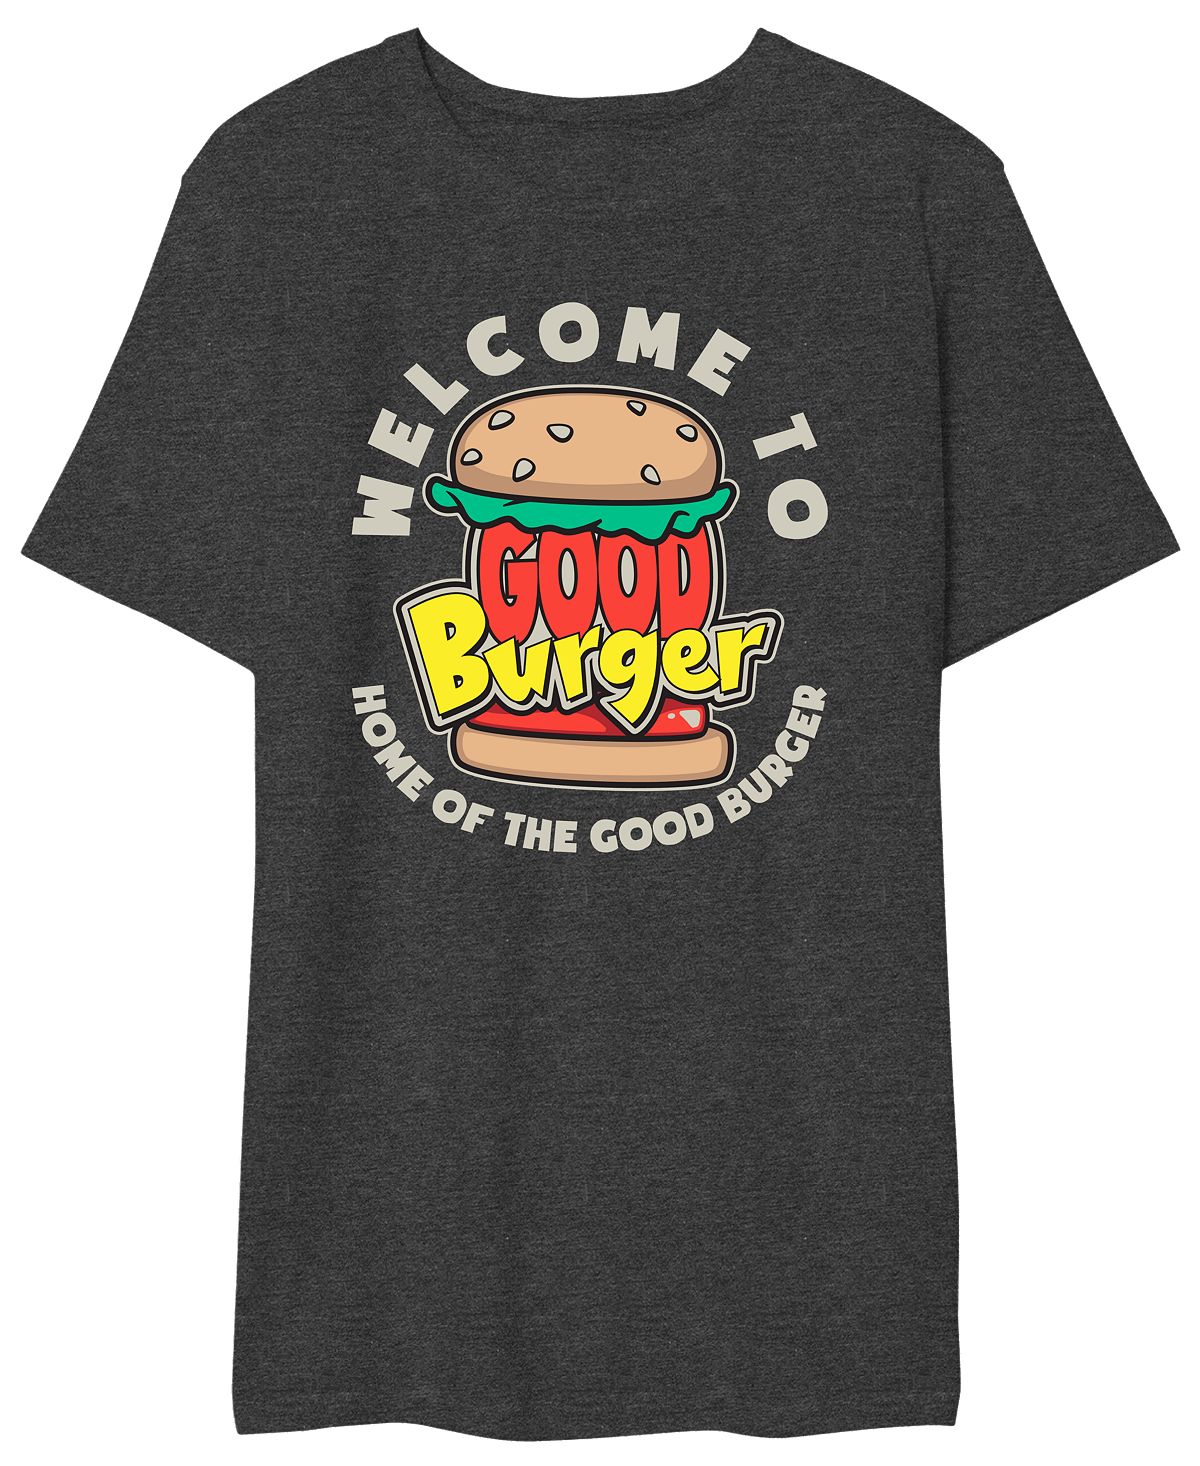 Мужская футболка с надписью good burger добро пожаловать в good burger AIRWAVES, мульти burger wolfgang heidelberger wut